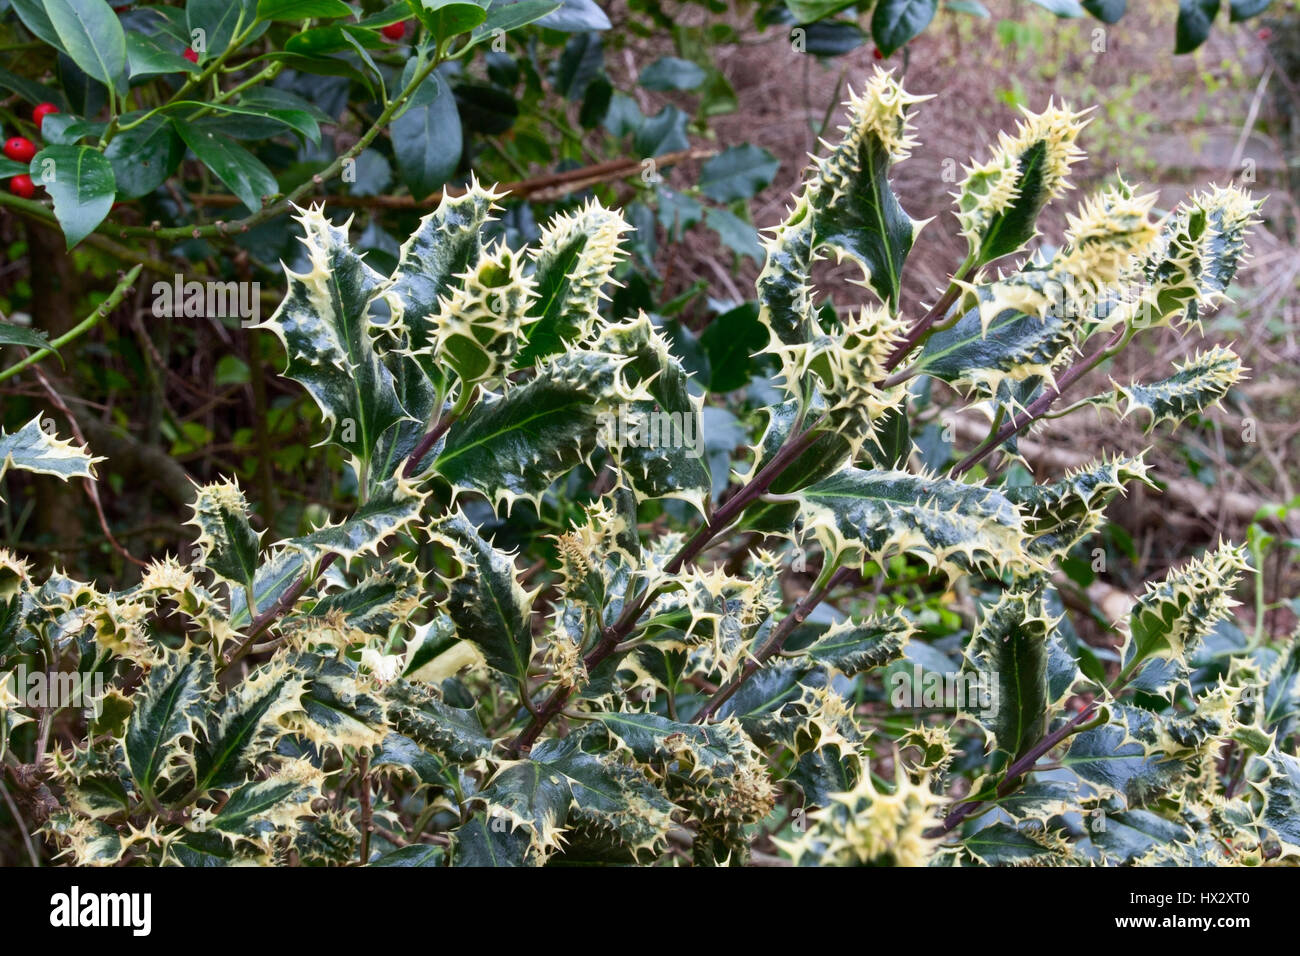 Ilex aquifolium 'Ferox Argentea' Stock Photo